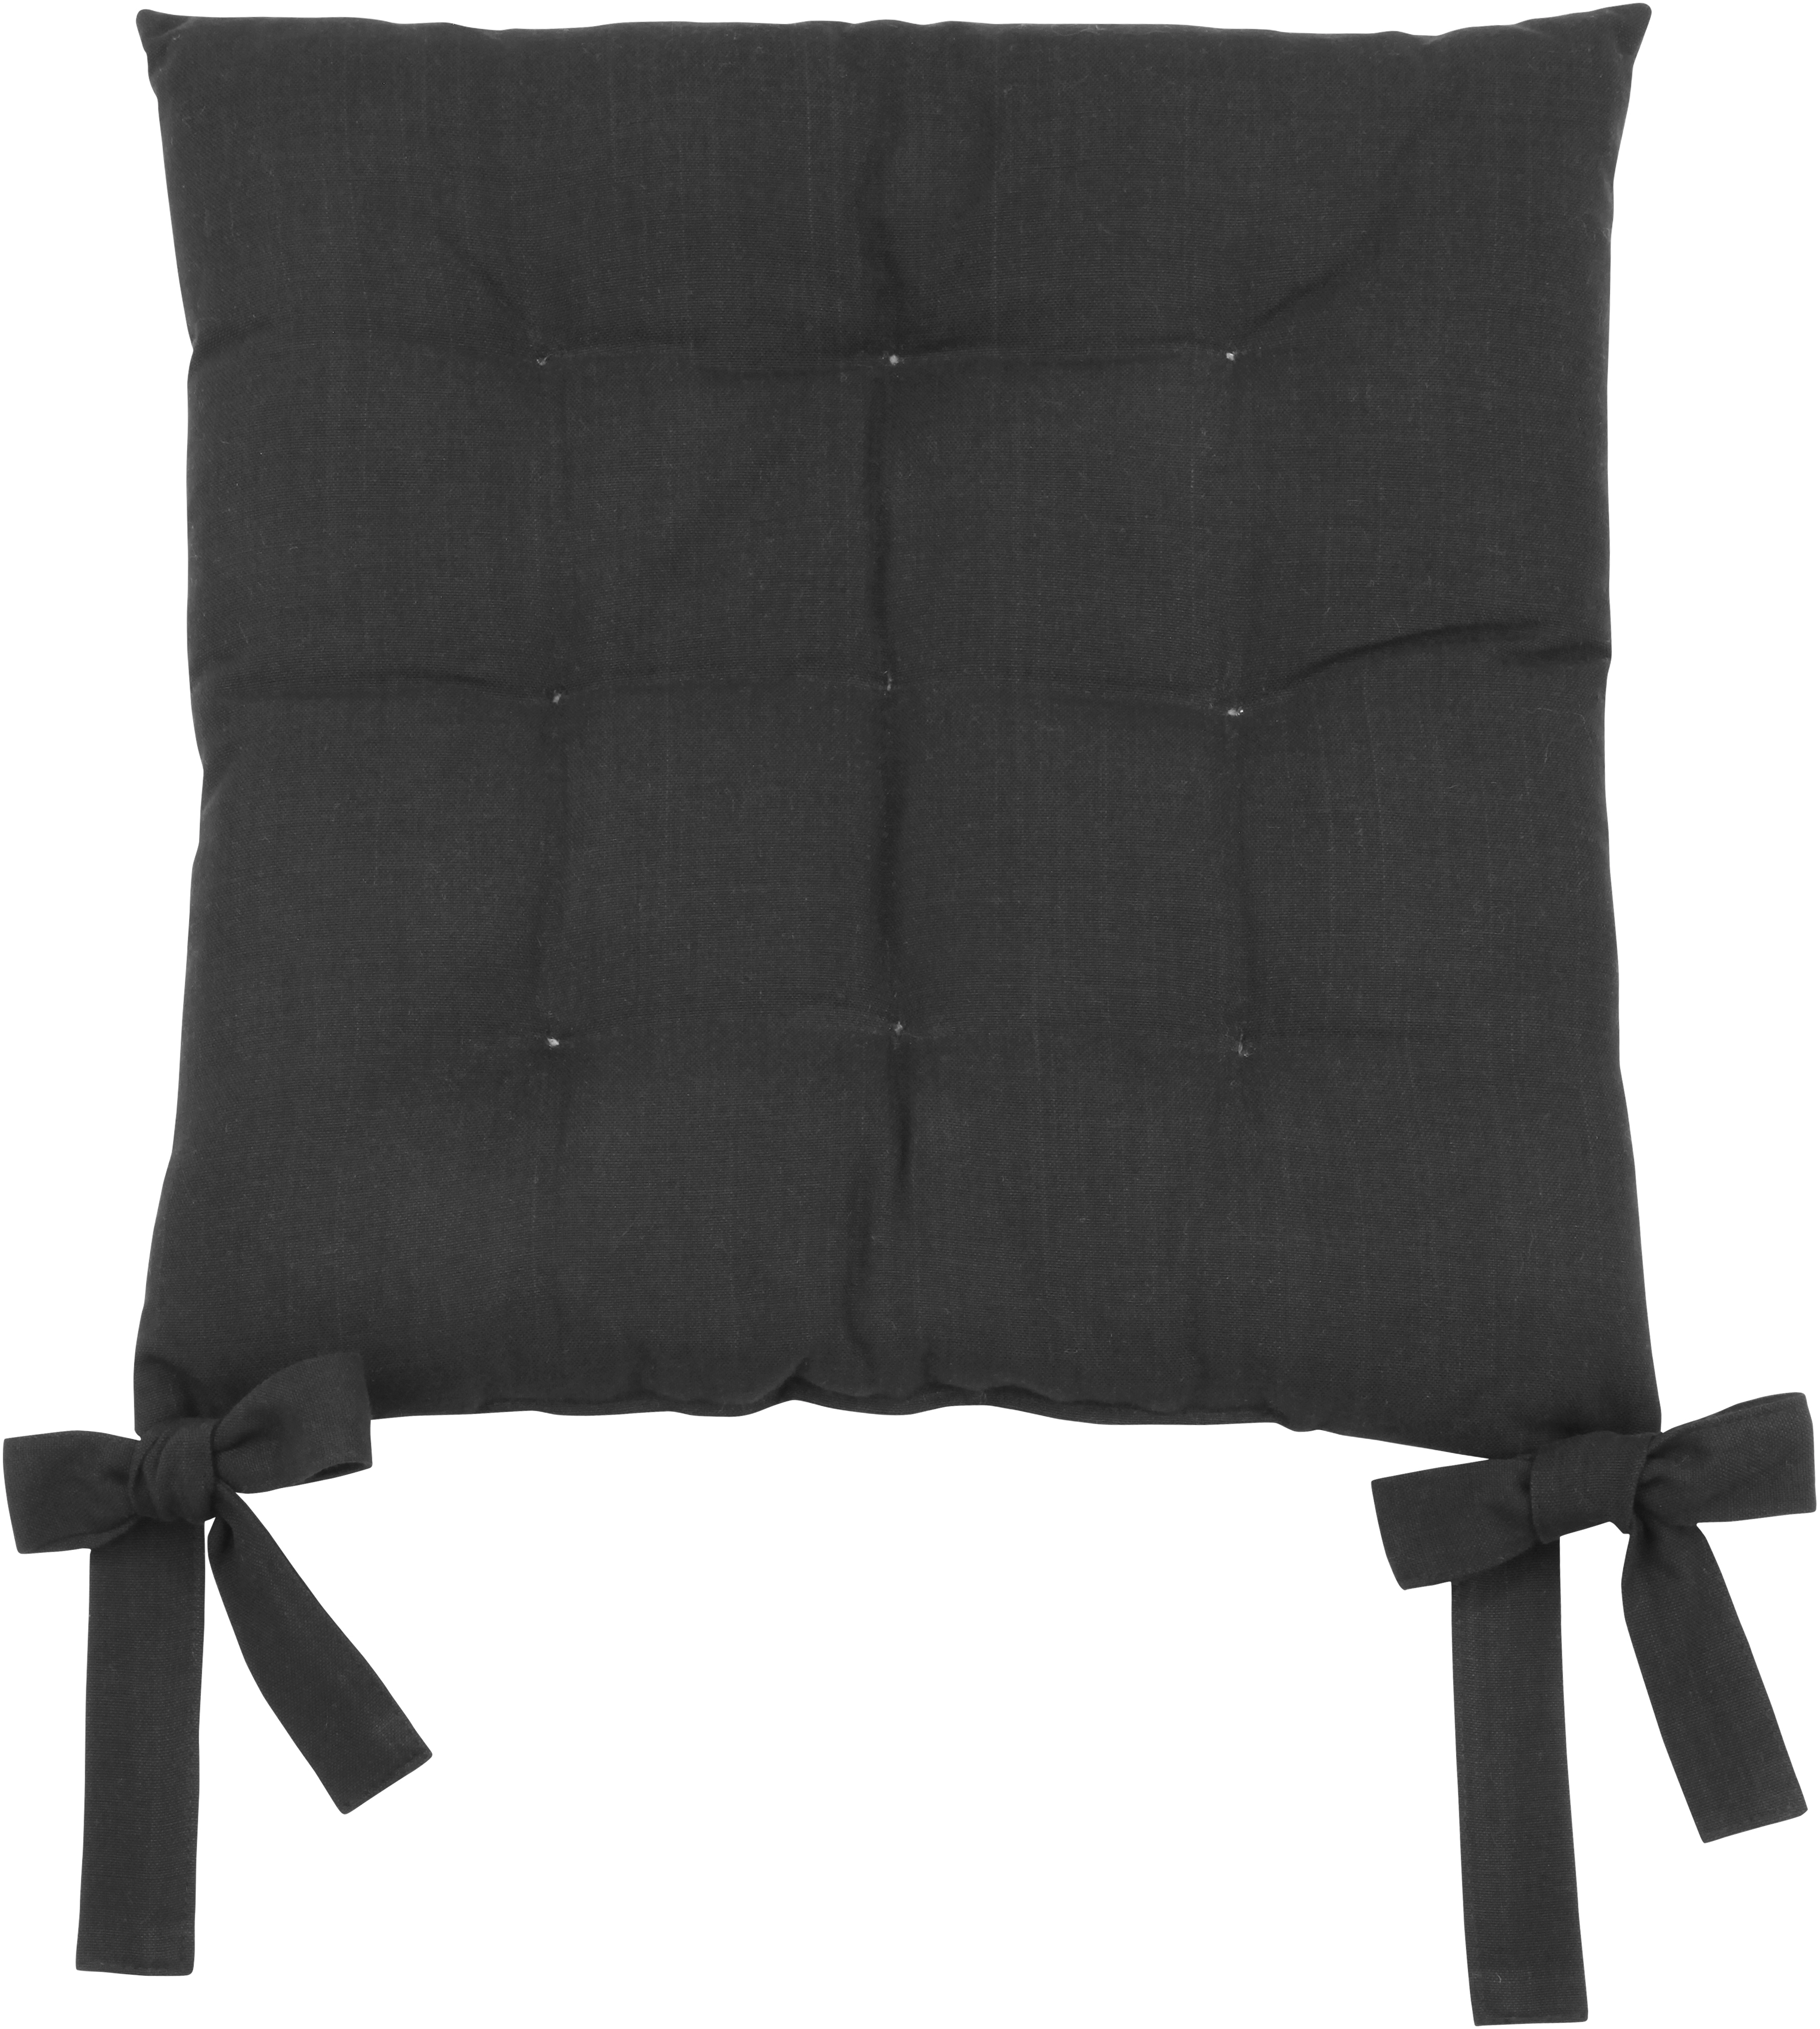 Sitzkissen Handlett Schwarz-Grau Uni 40 cm x 40 cm kaufen bei OBI